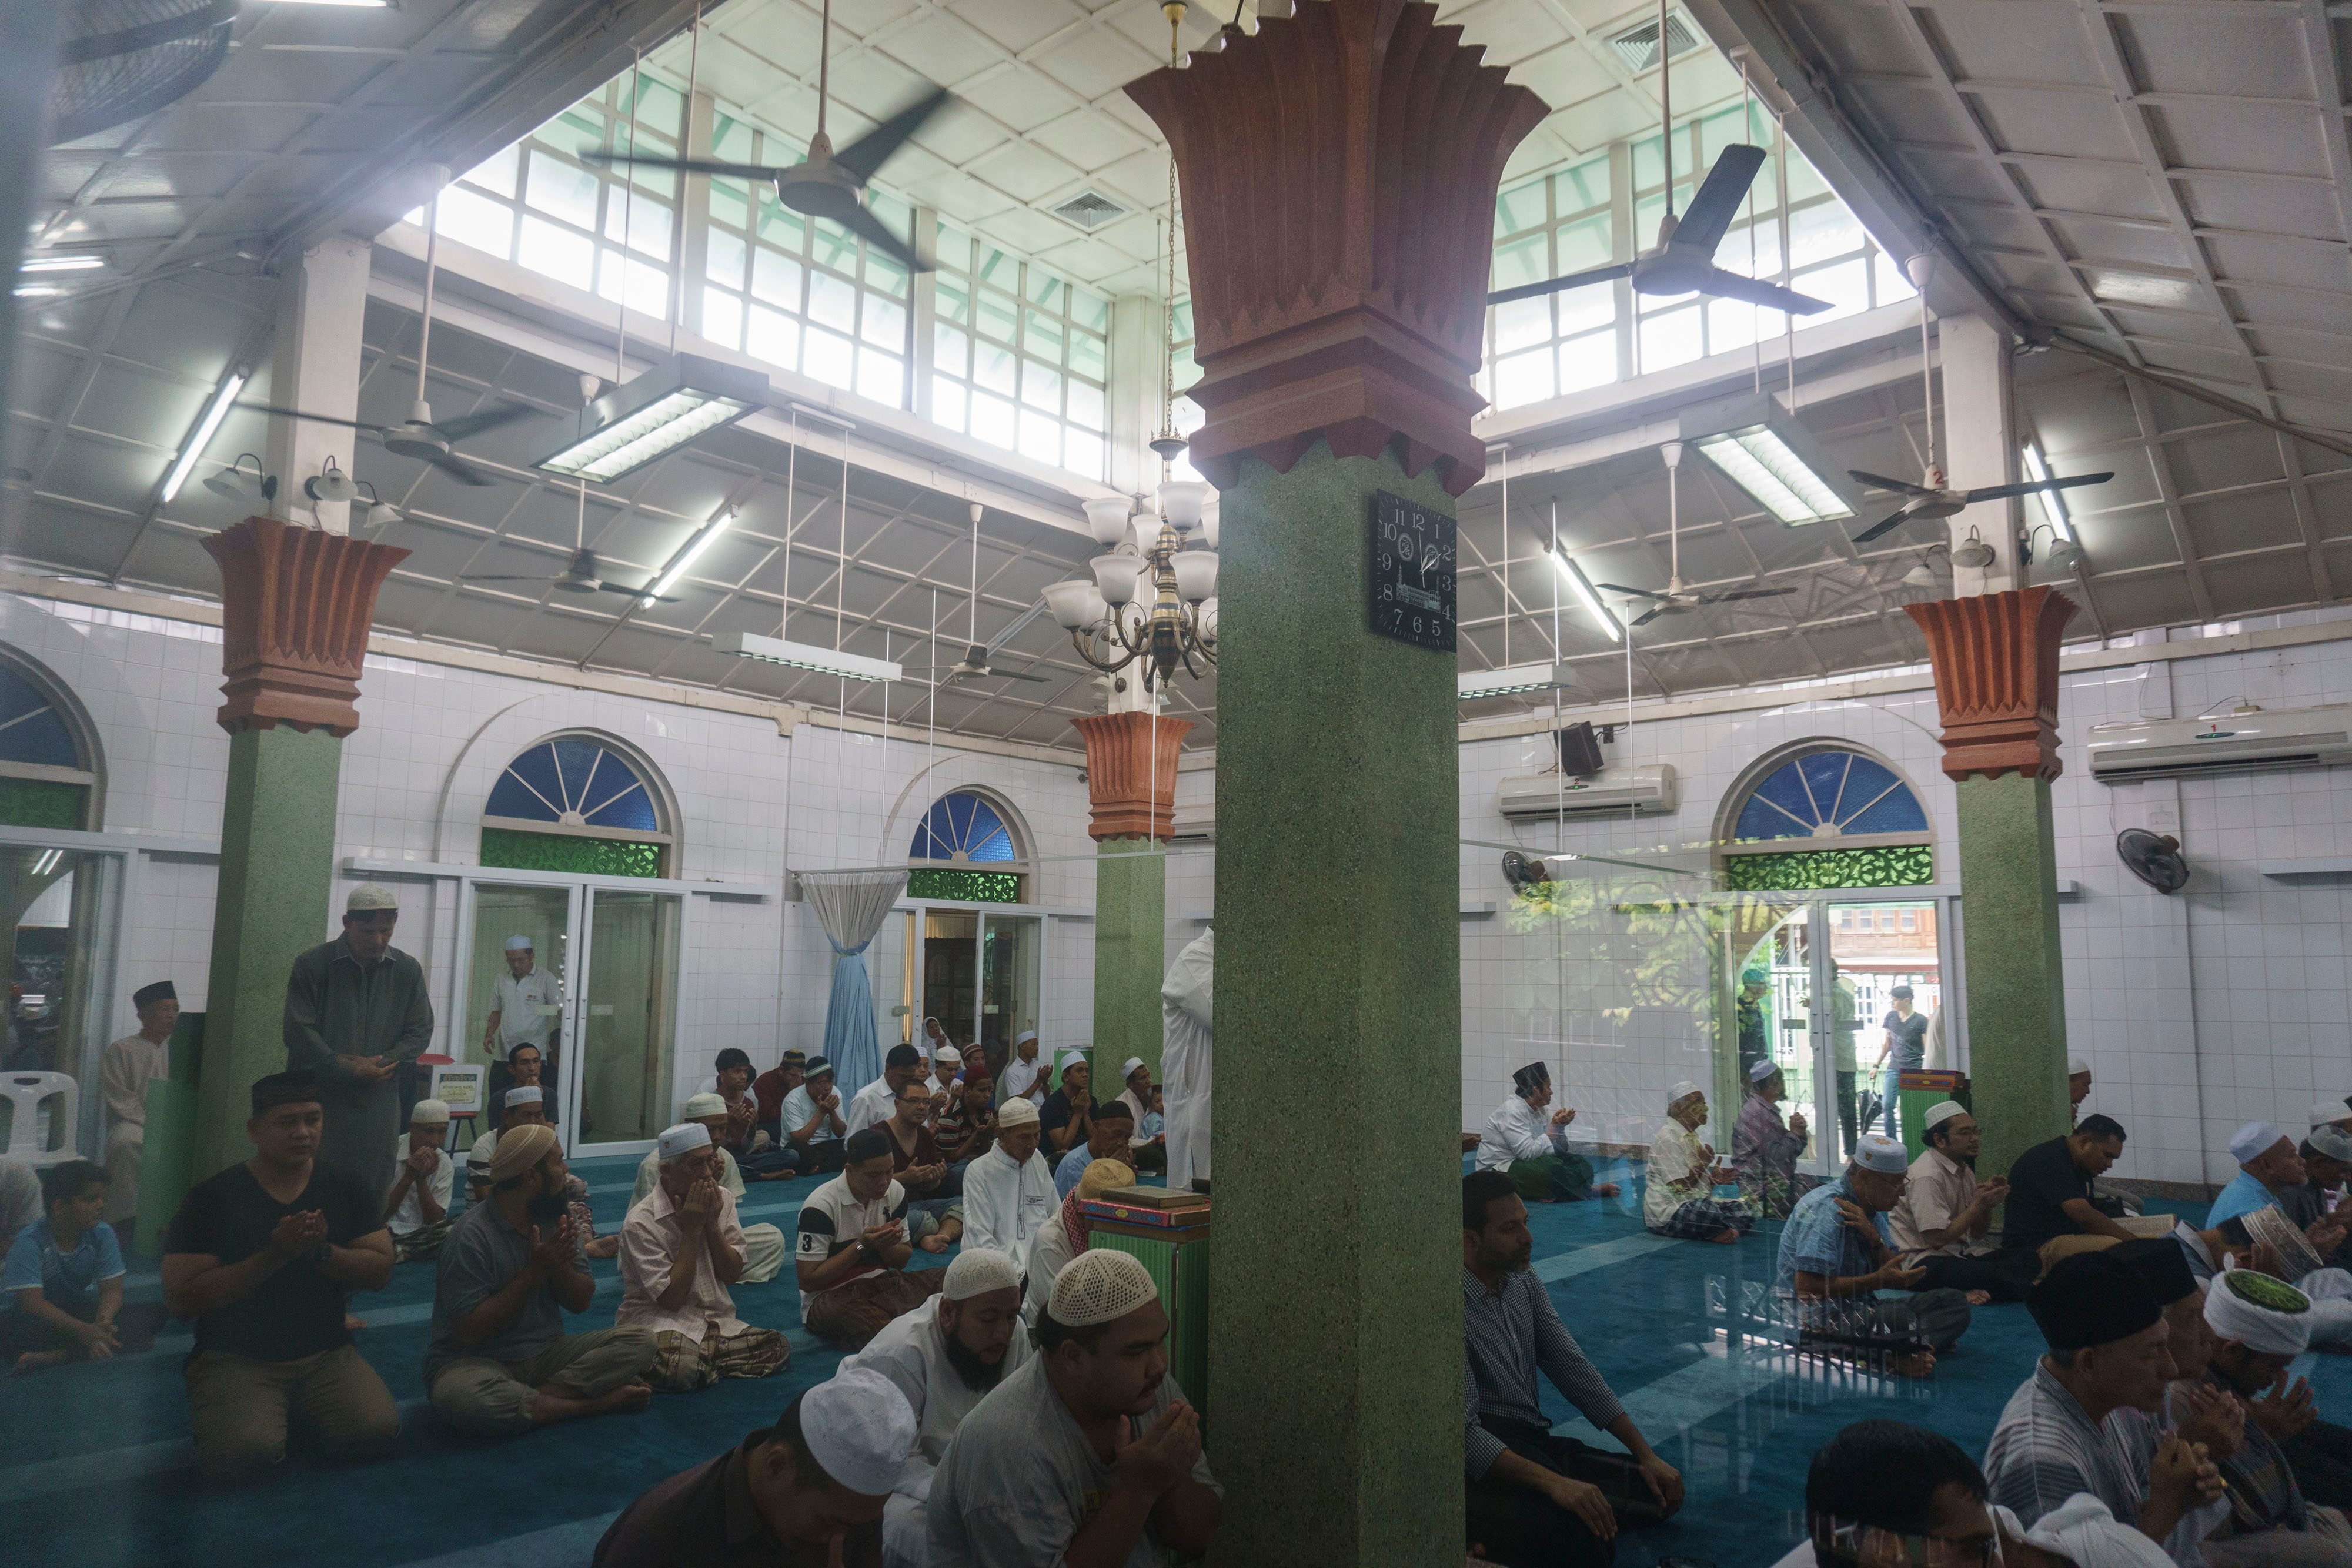 Umat Muslim menunggu waktu salat di Masjid Jawa, Bangkok, pada 9 Juni 2017. Foto oleh Hendra Nurdiyansyah/Antara 